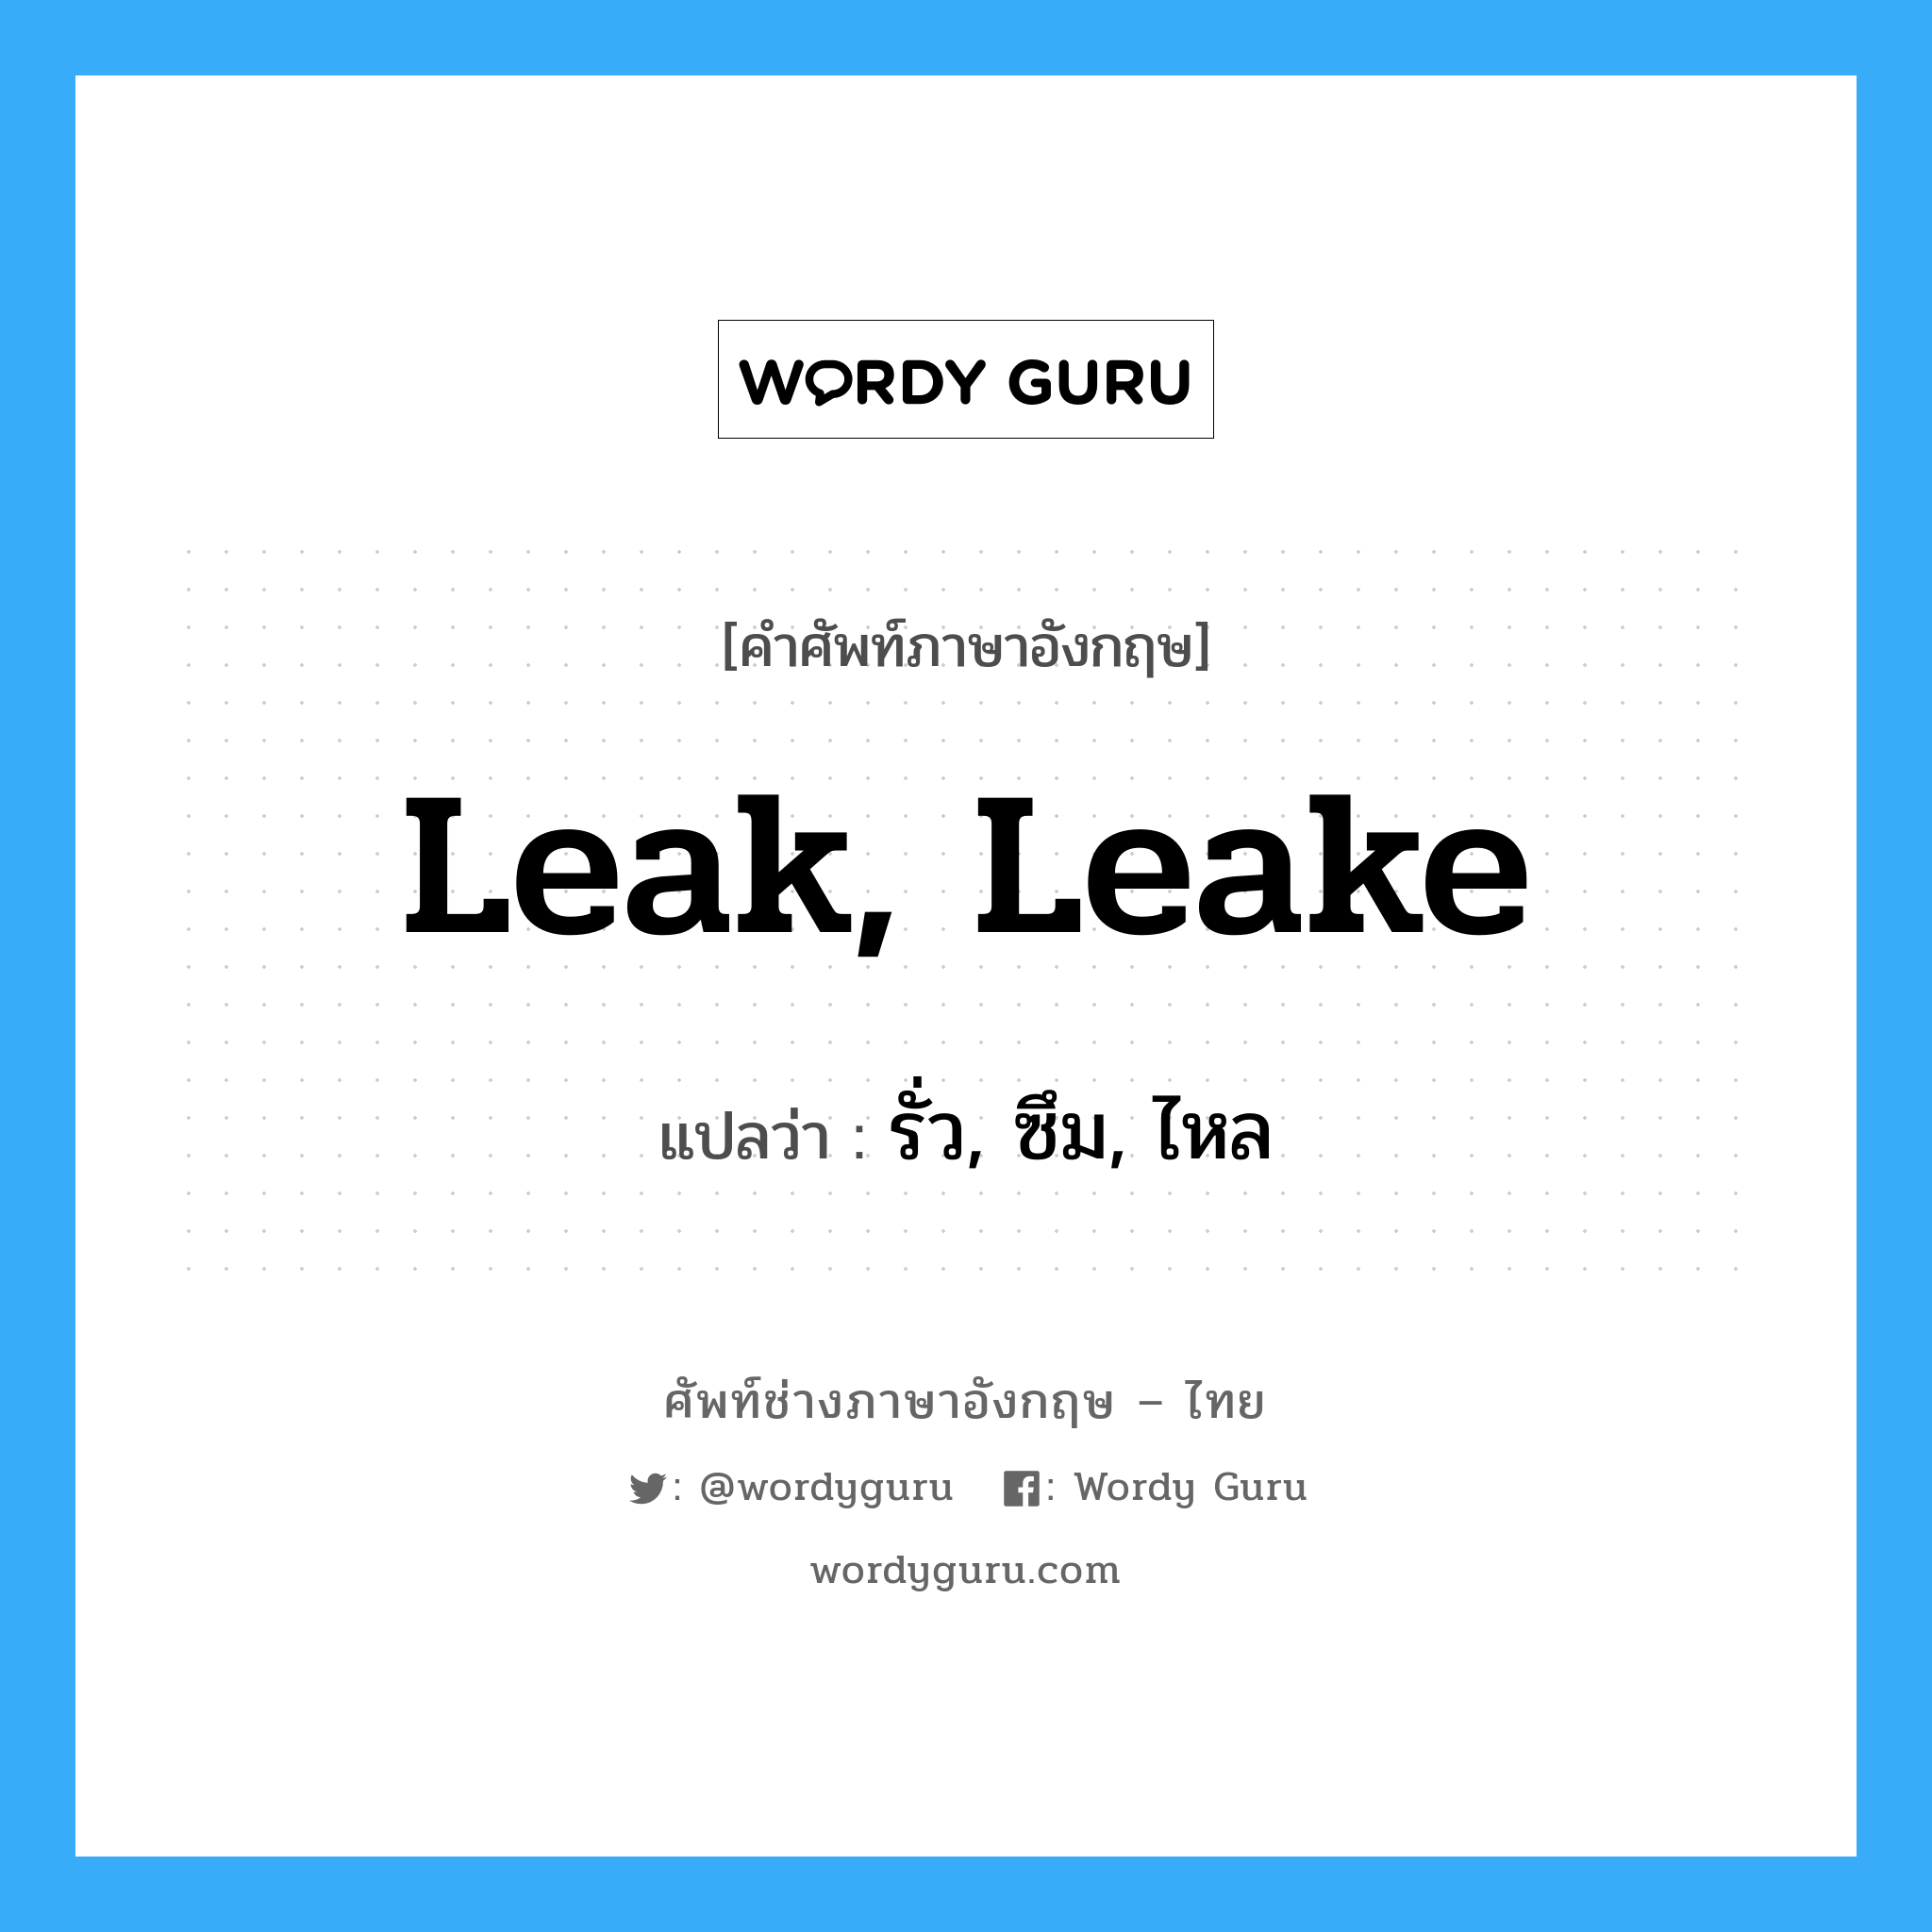 leak, leake แปลว่า?, คำศัพท์ช่างภาษาอังกฤษ - ไทย leak, leake คำศัพท์ภาษาอังกฤษ leak, leake แปลว่า รั่ว, ซึม, ไหล